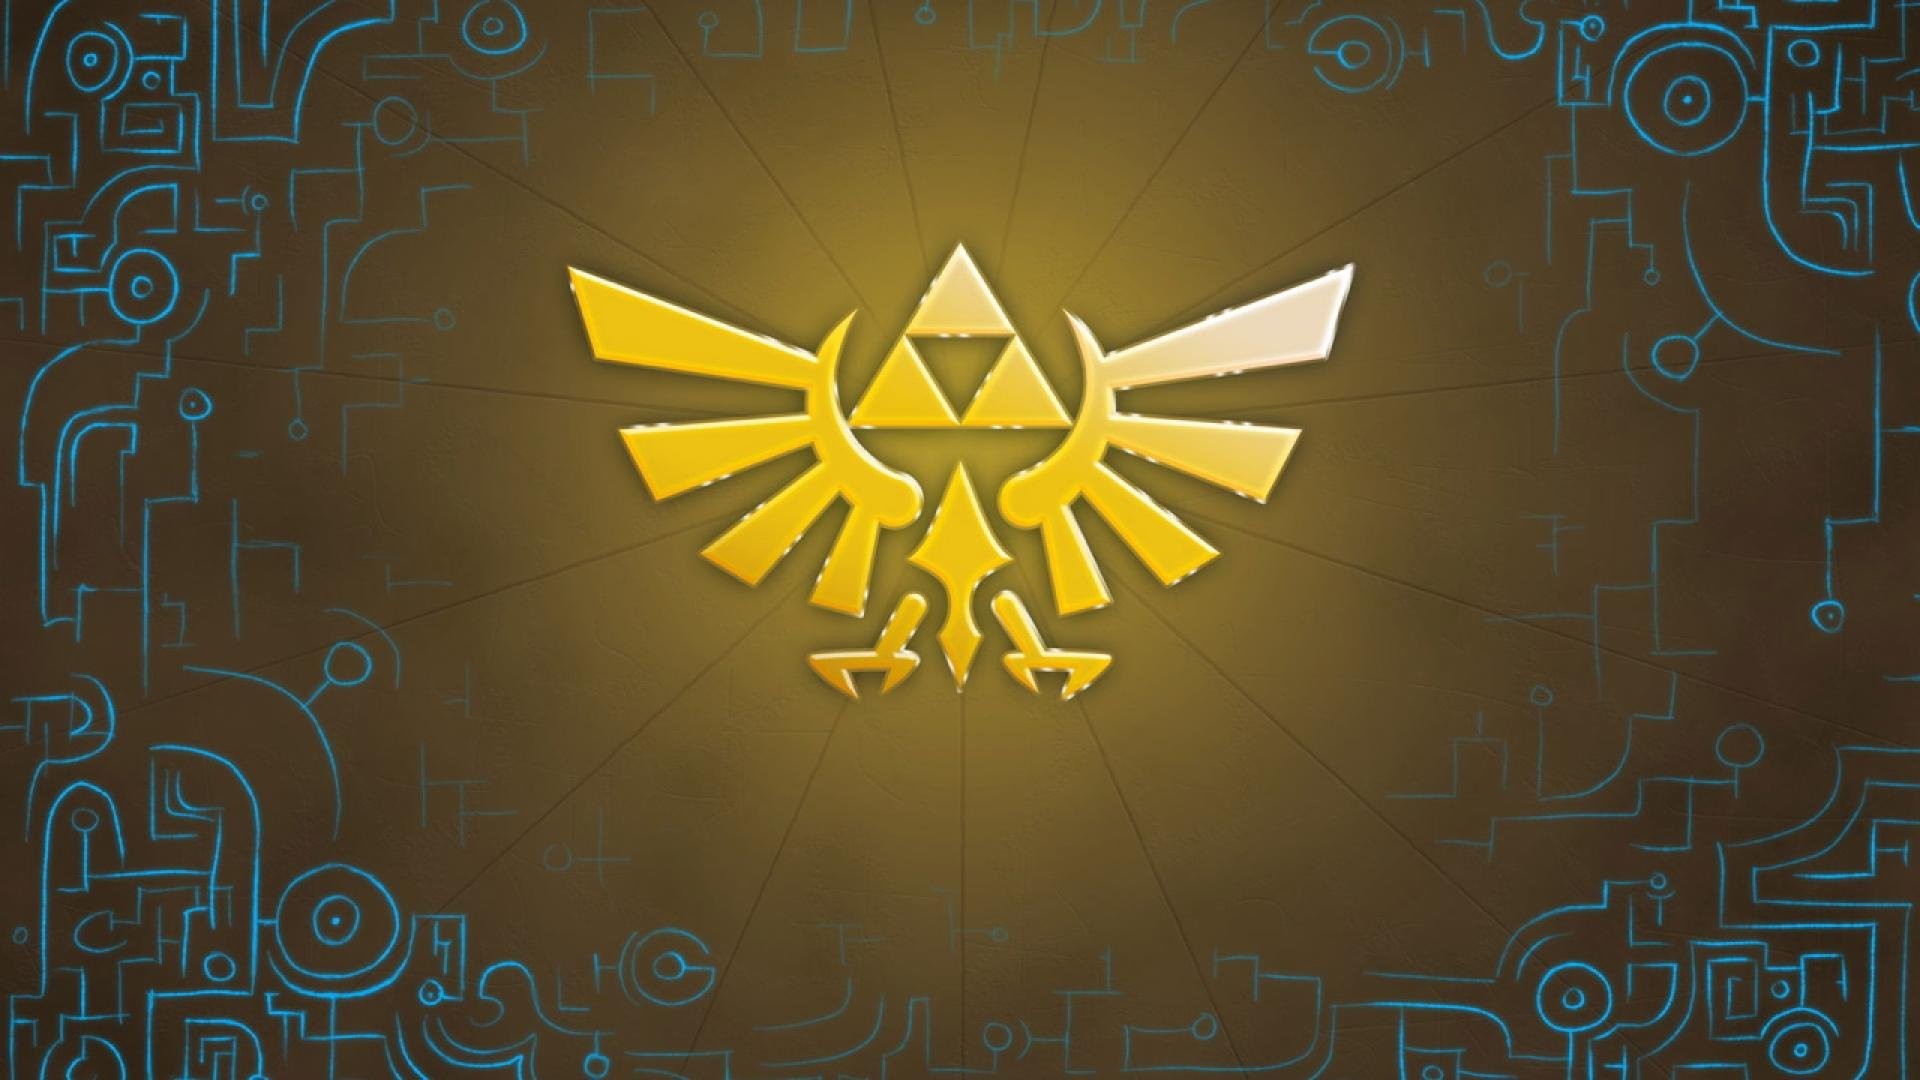 The Legend of Zelda Triforce Wallpaper for Phone by AmaraDSaya on DeviantArt